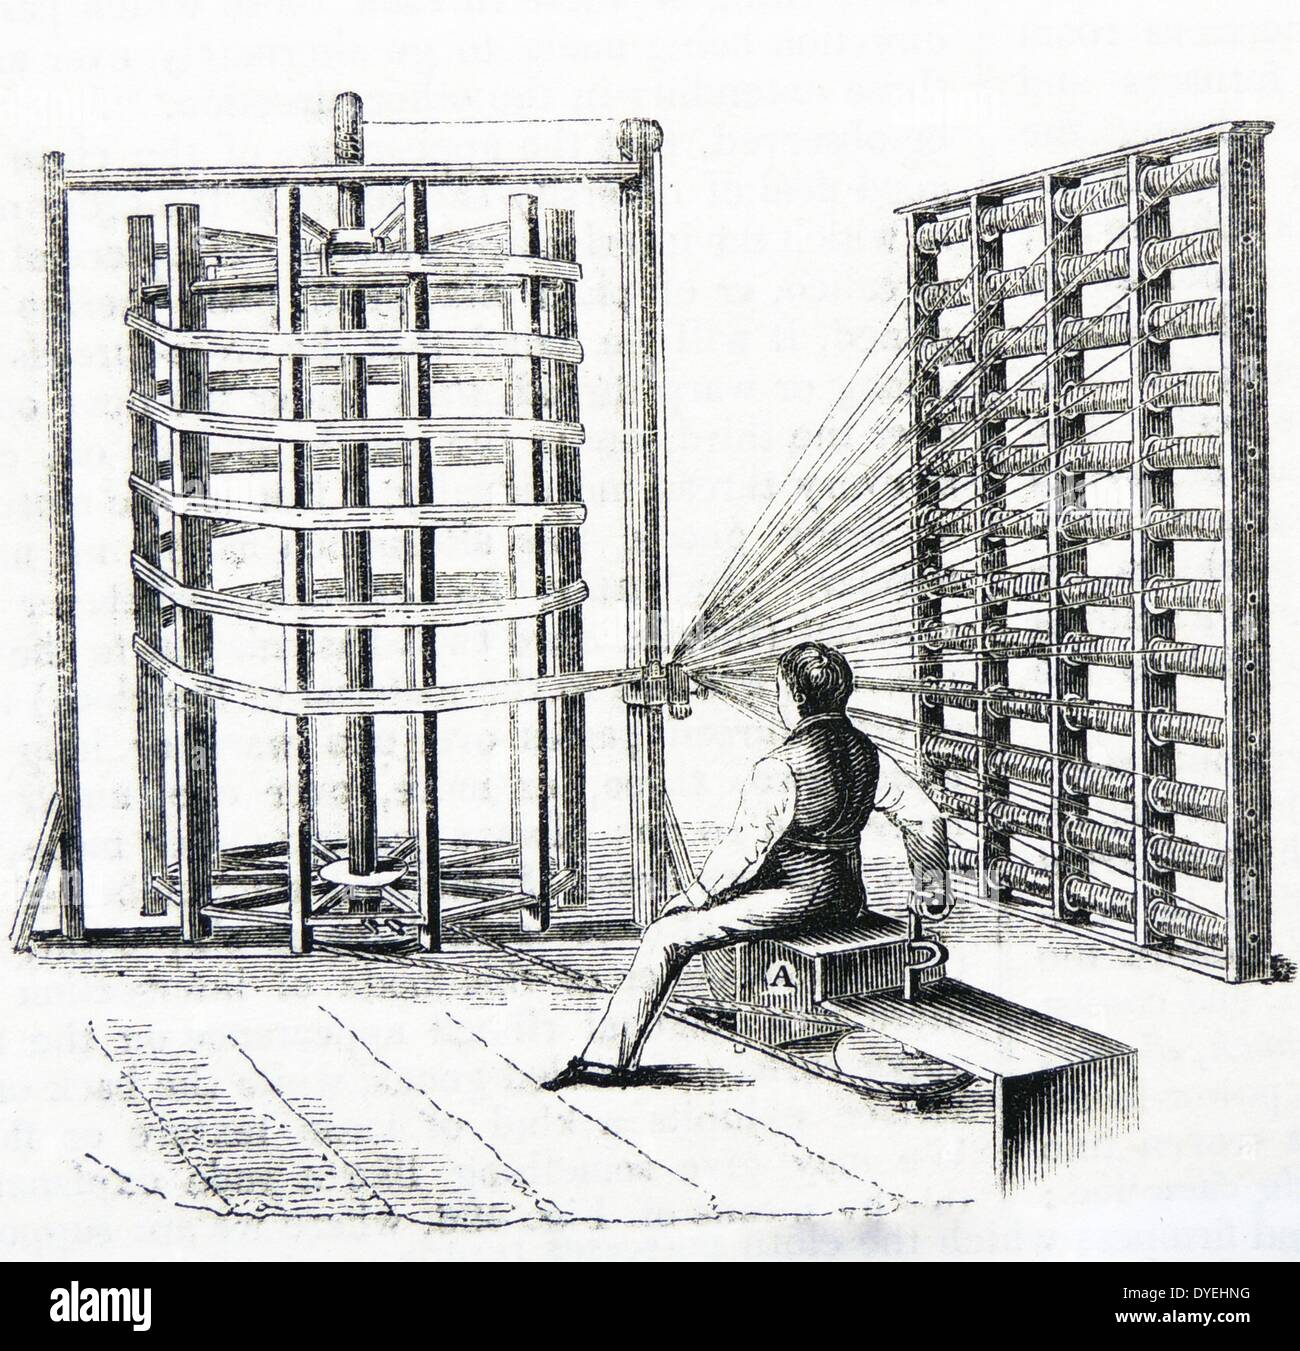 Pour l'ourdissage de fils de coton fine utilisée dans la production de mousseline. La gravure, Londres, 1851. Banque D'Images